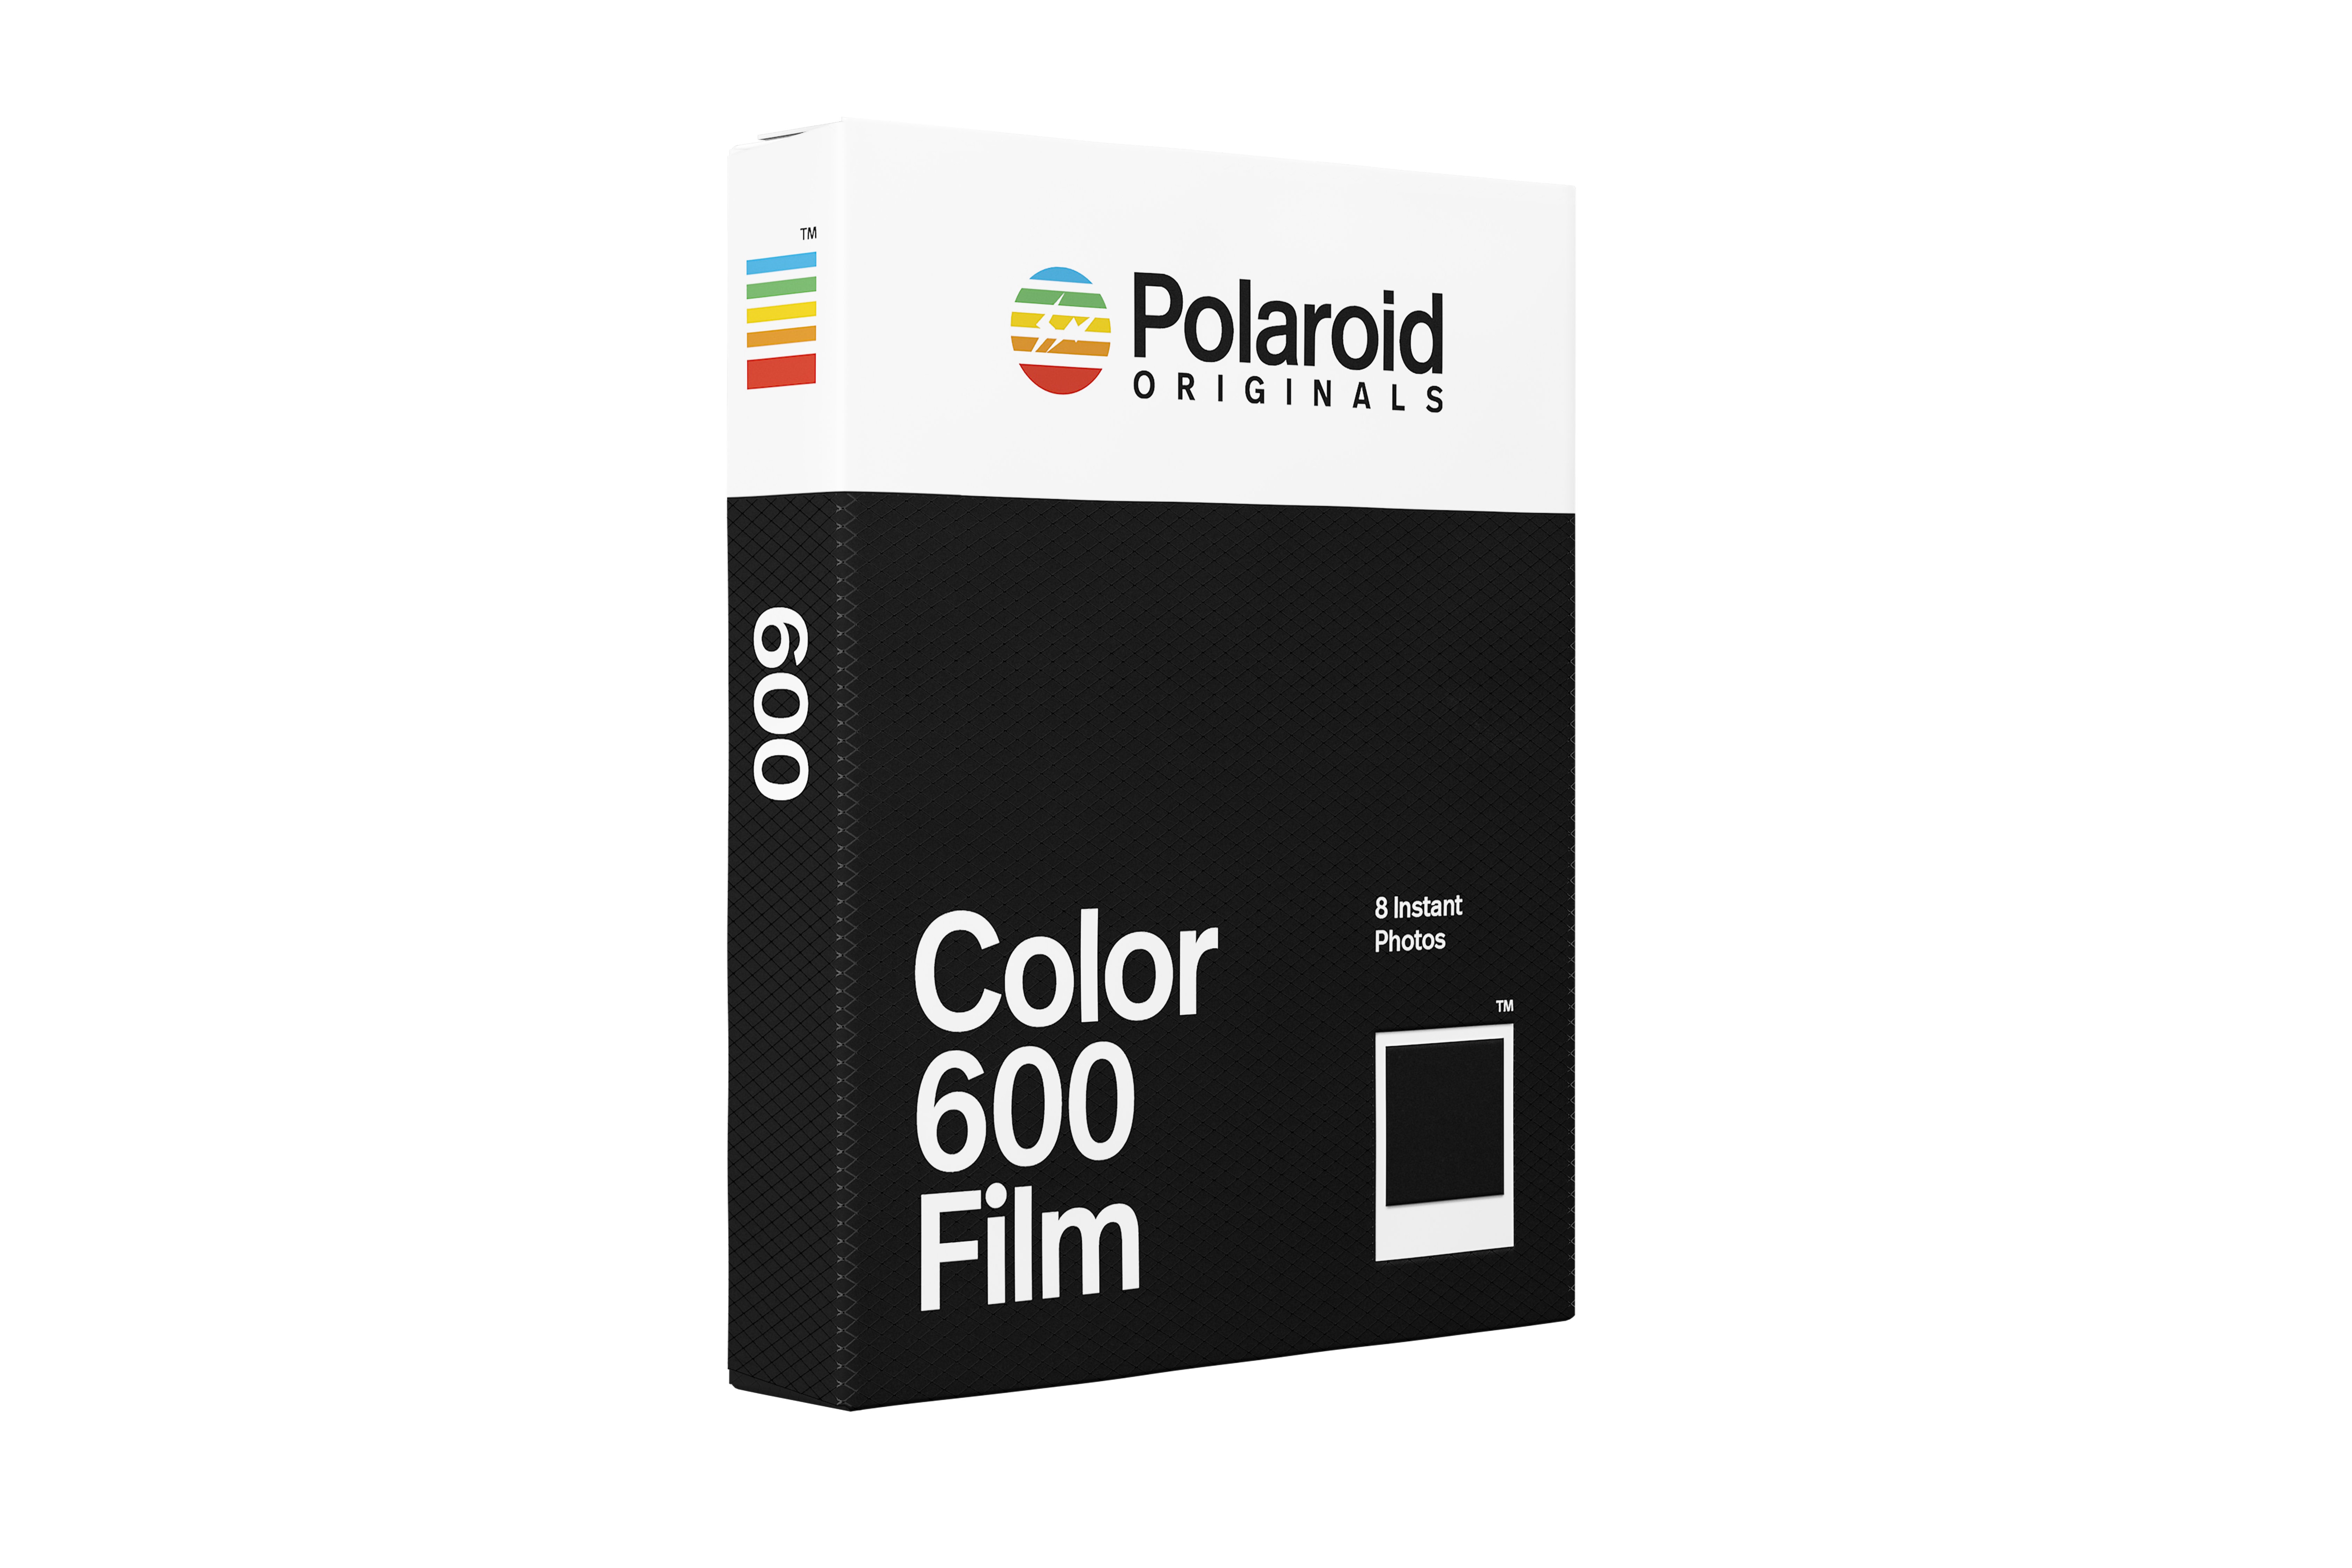 Polaroid Originals x fragment design 联名系列